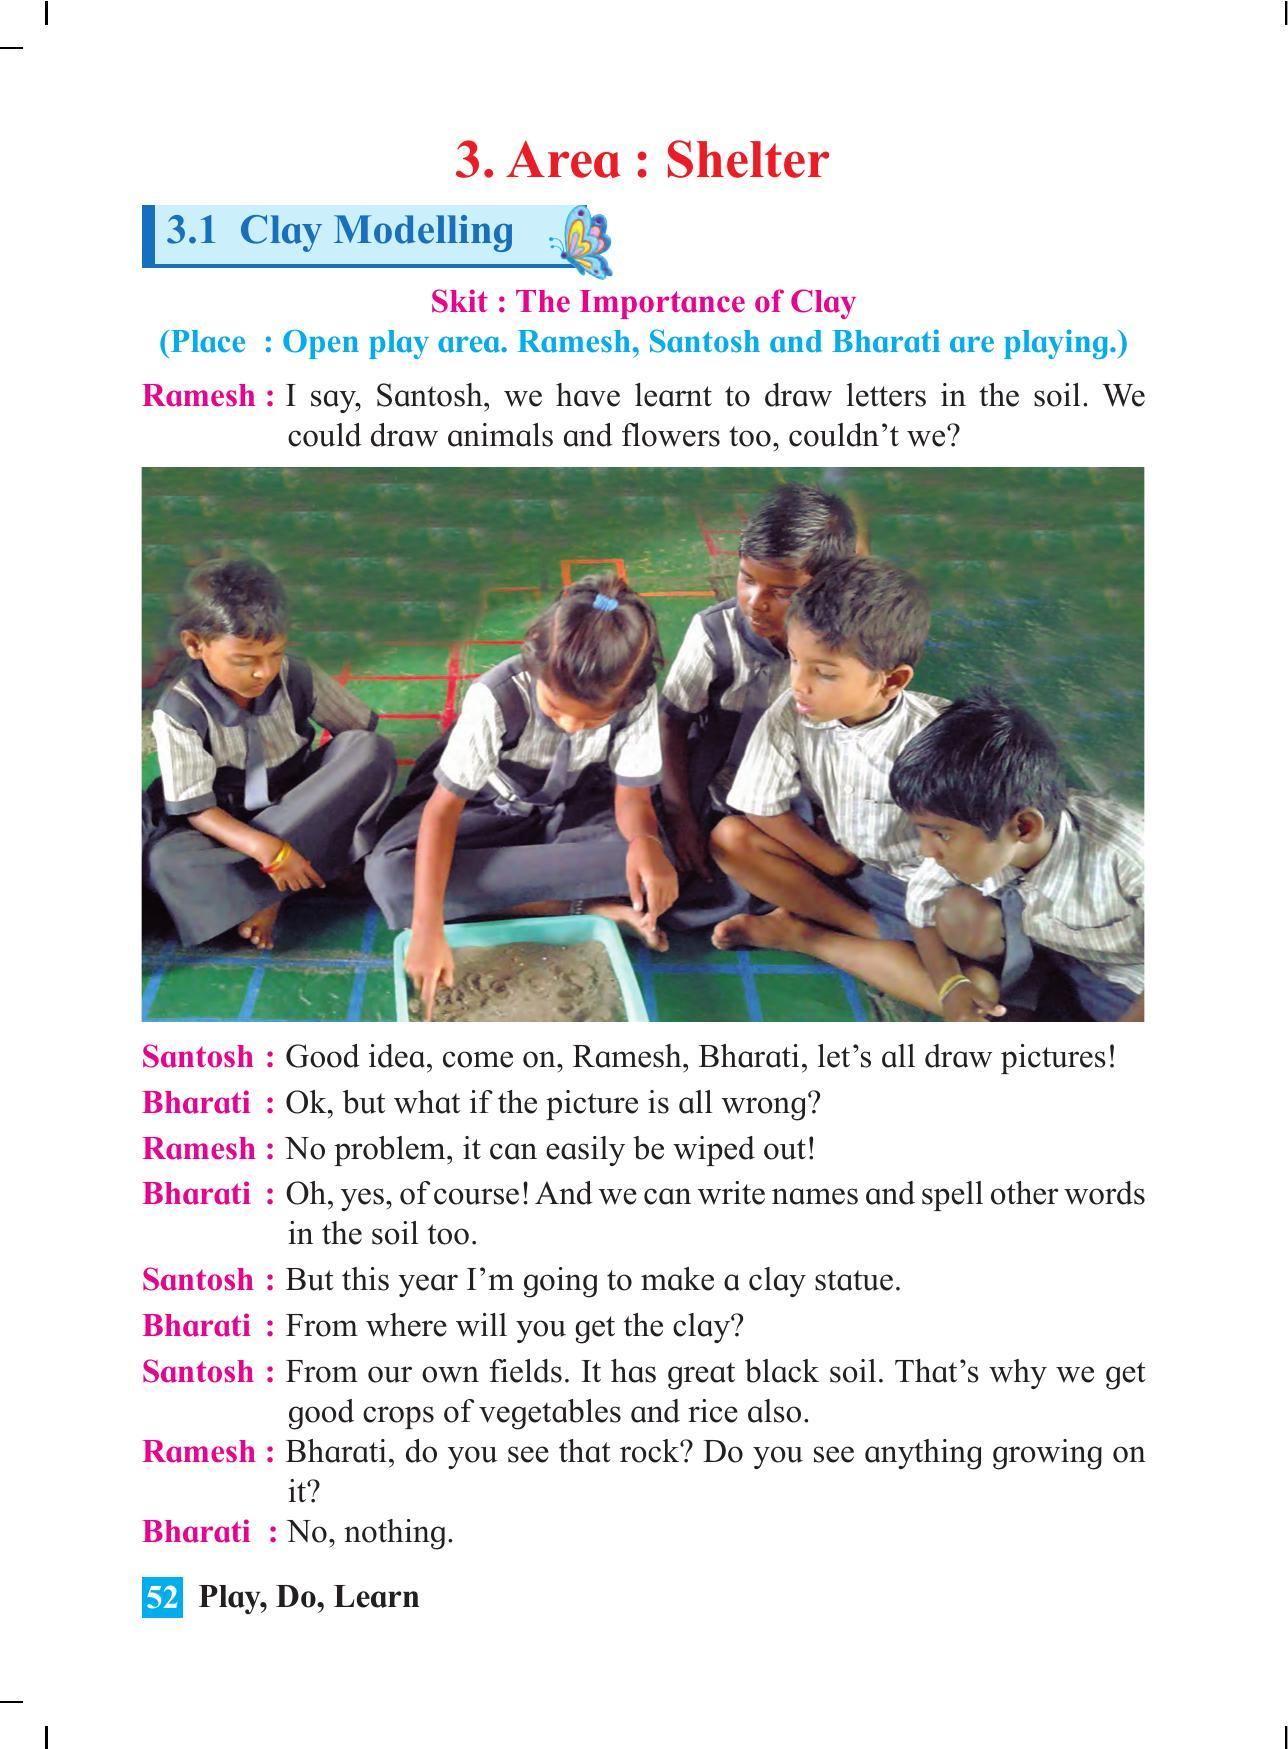 Maharashtra Board Class 4 Play Do Learn (English Medium) Textbook - Page 61